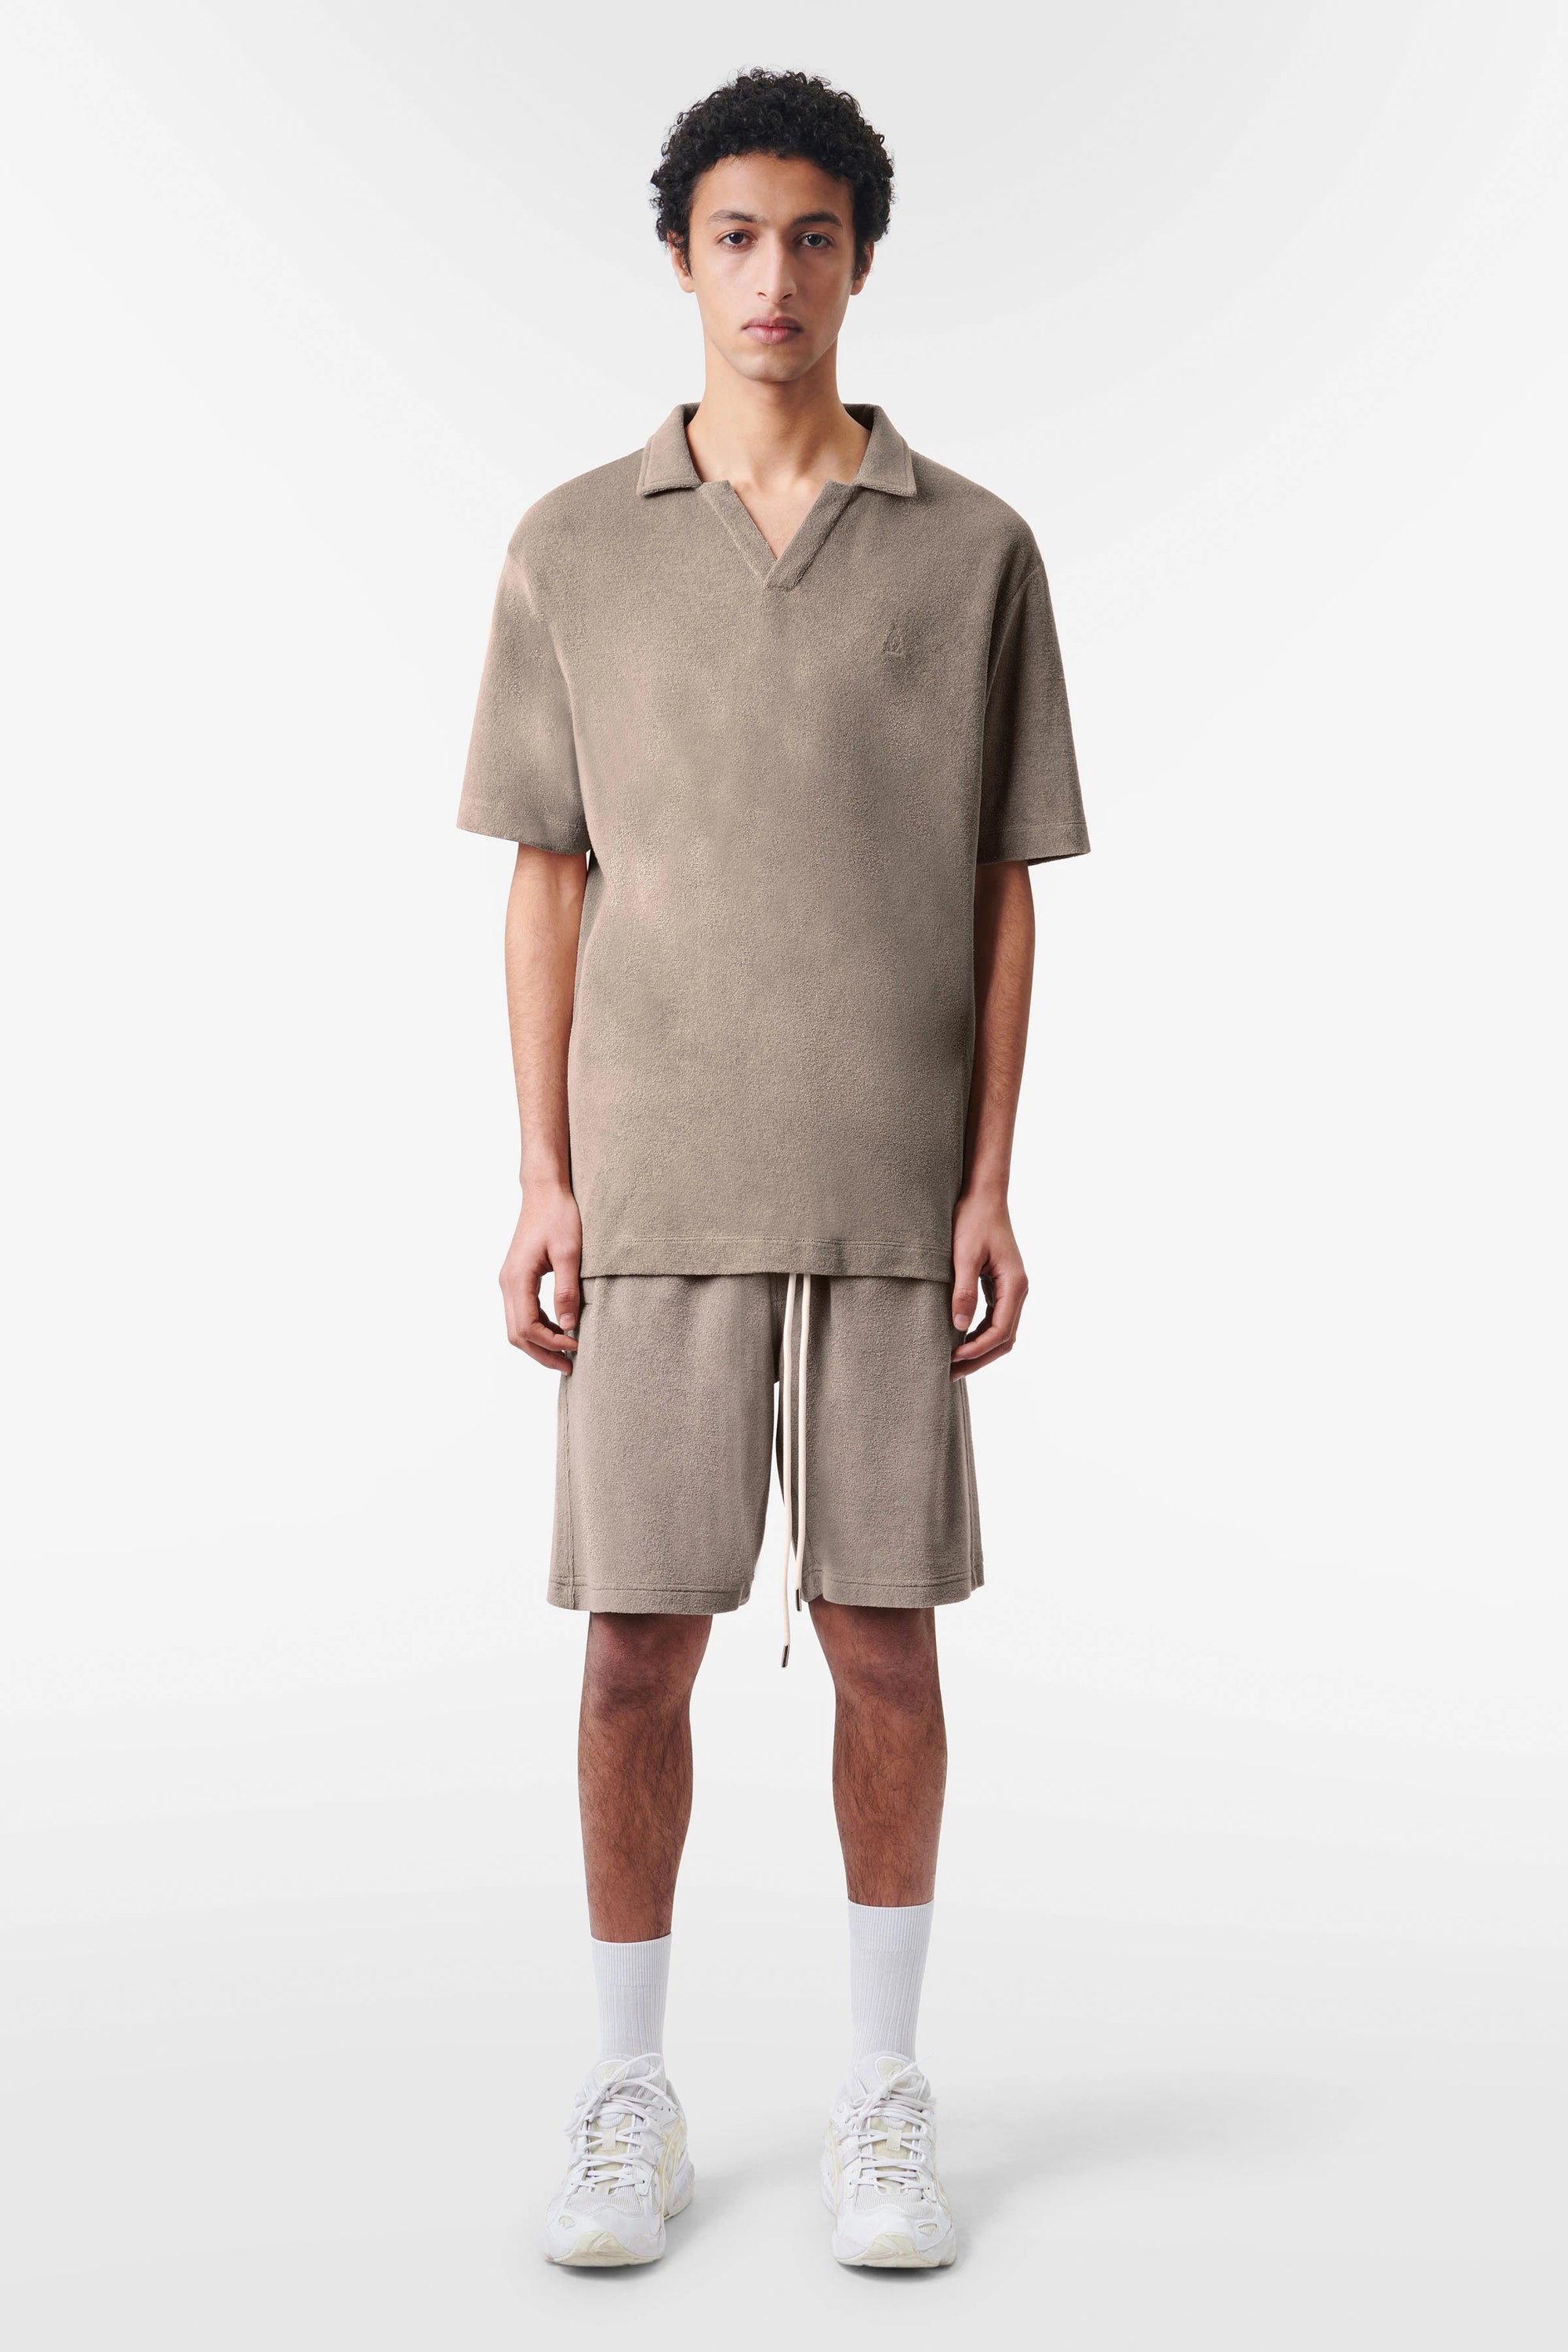 Drykorn - Sommerliches Poloshirt aus angenehmer Frottierware - Benedickt